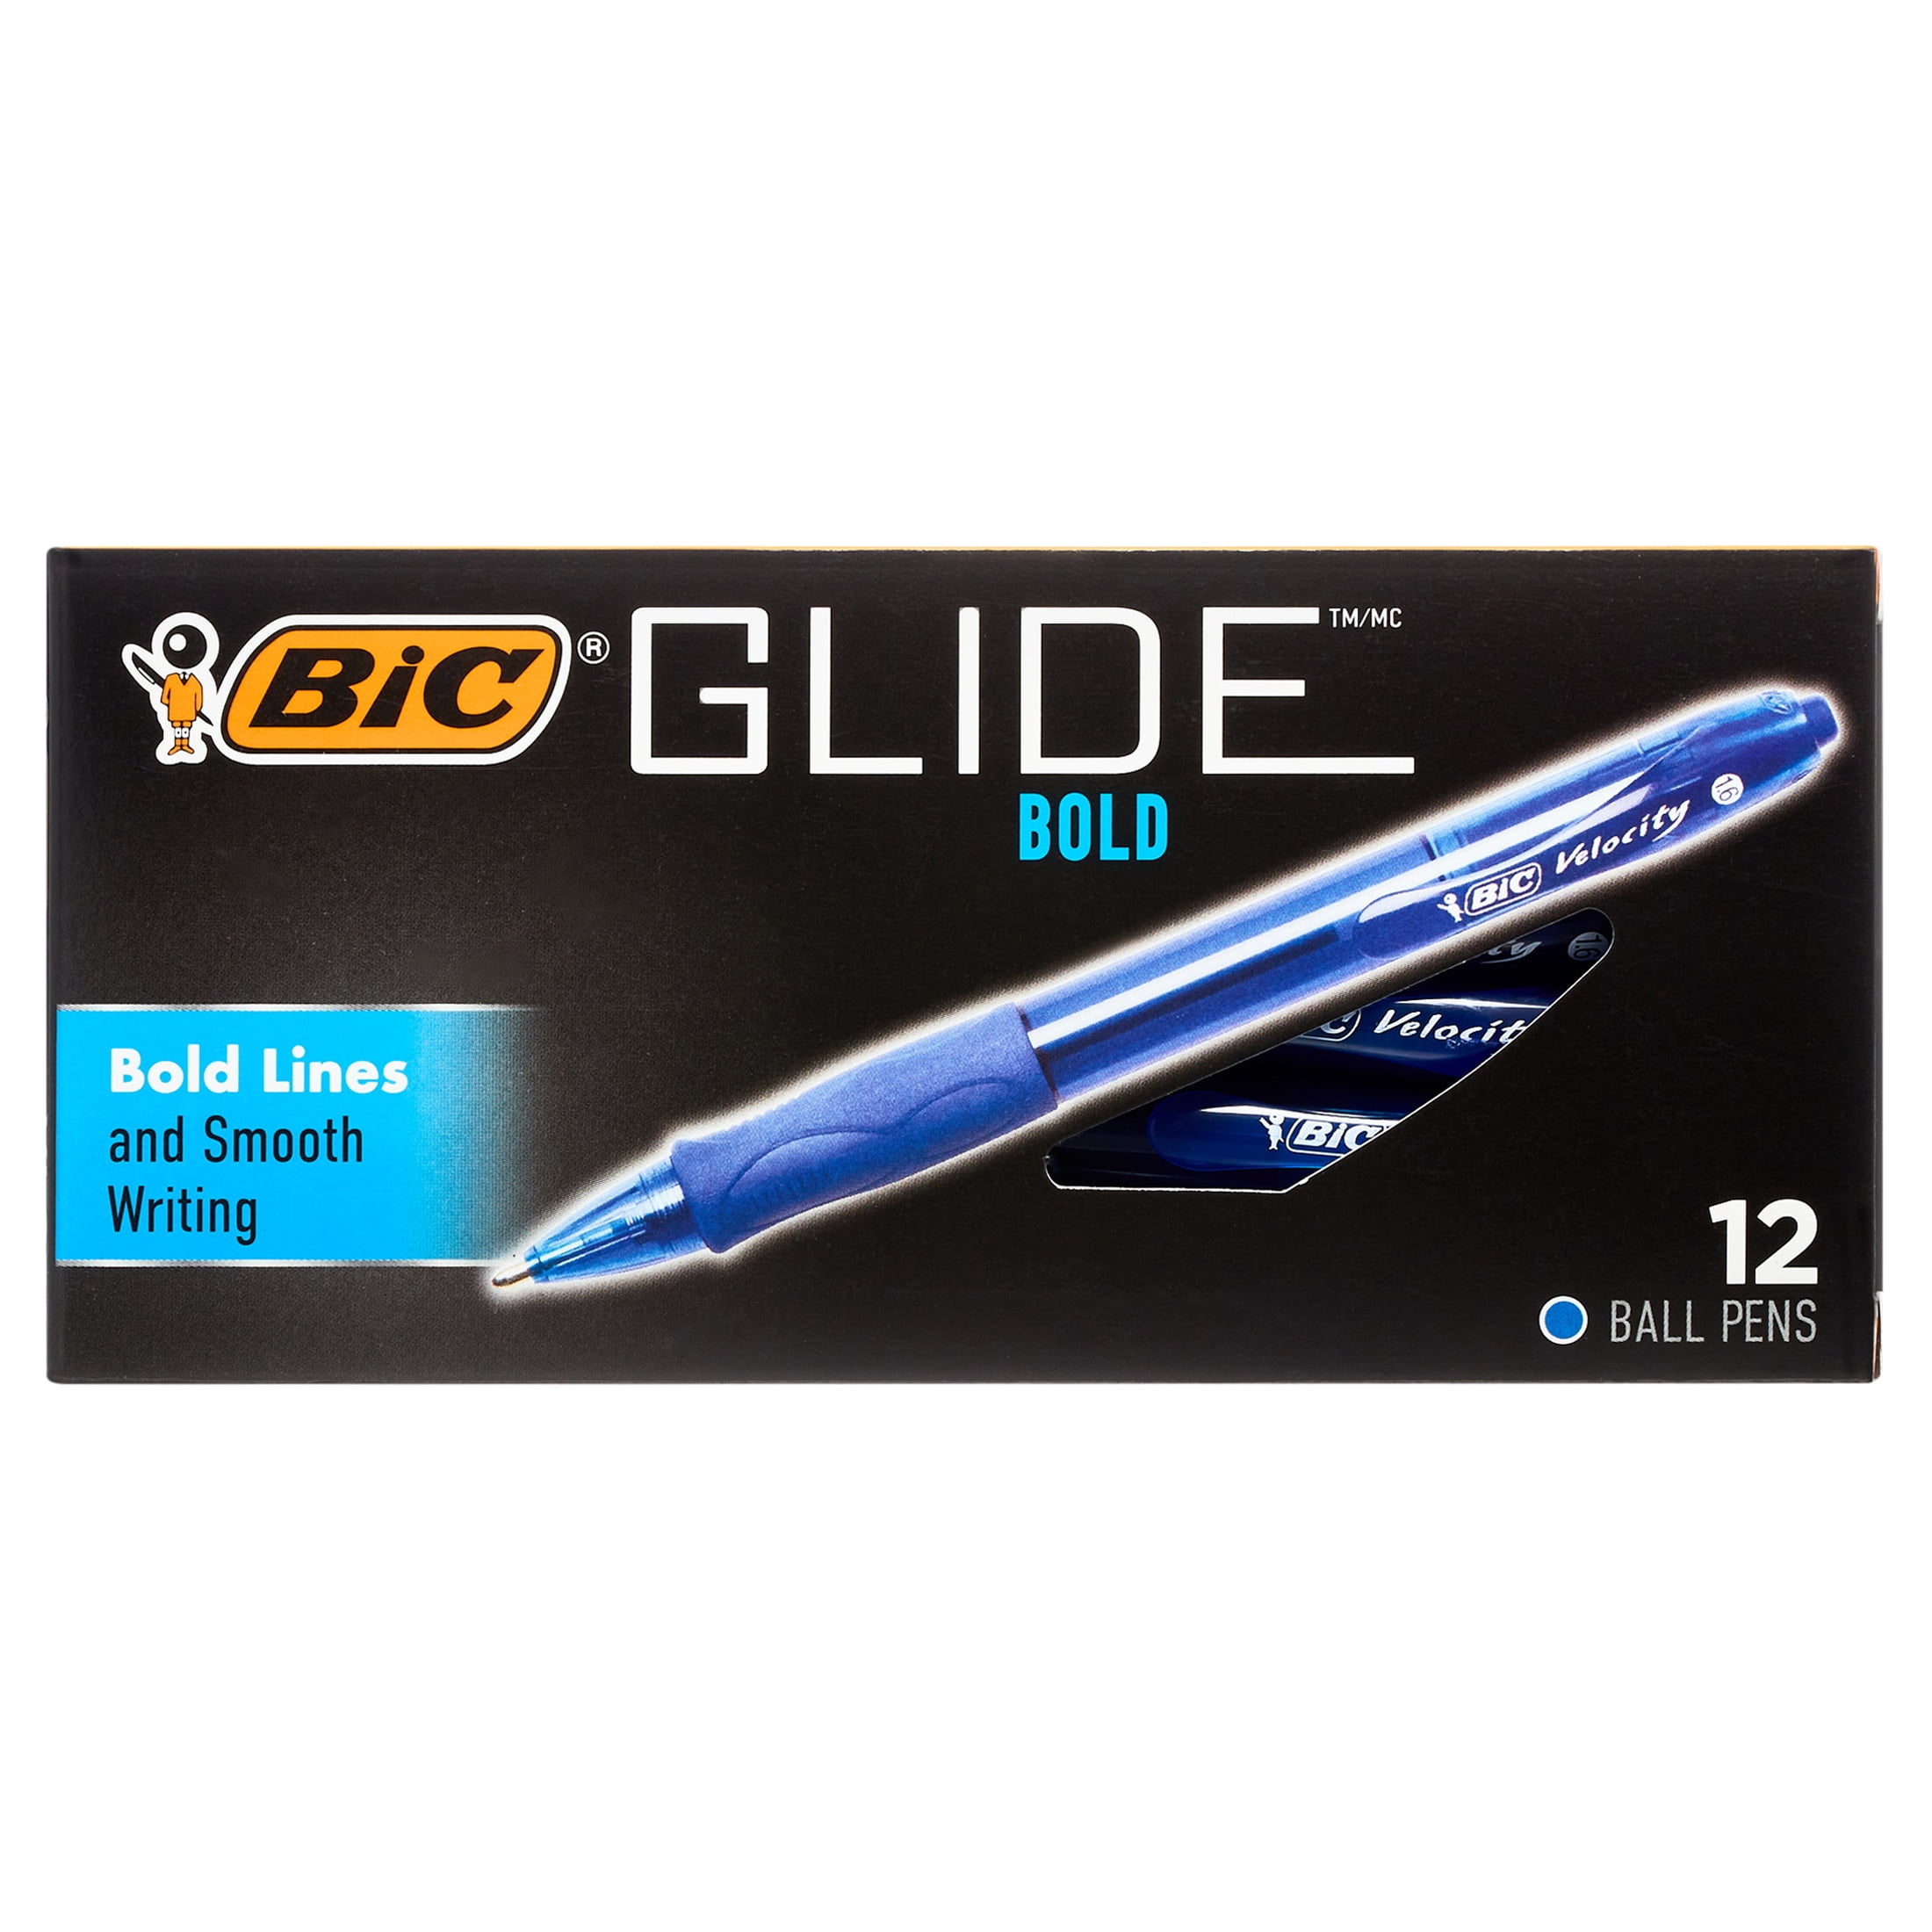 BiC BIC M10 Clic Bleu Moyen 10 pièce(s)